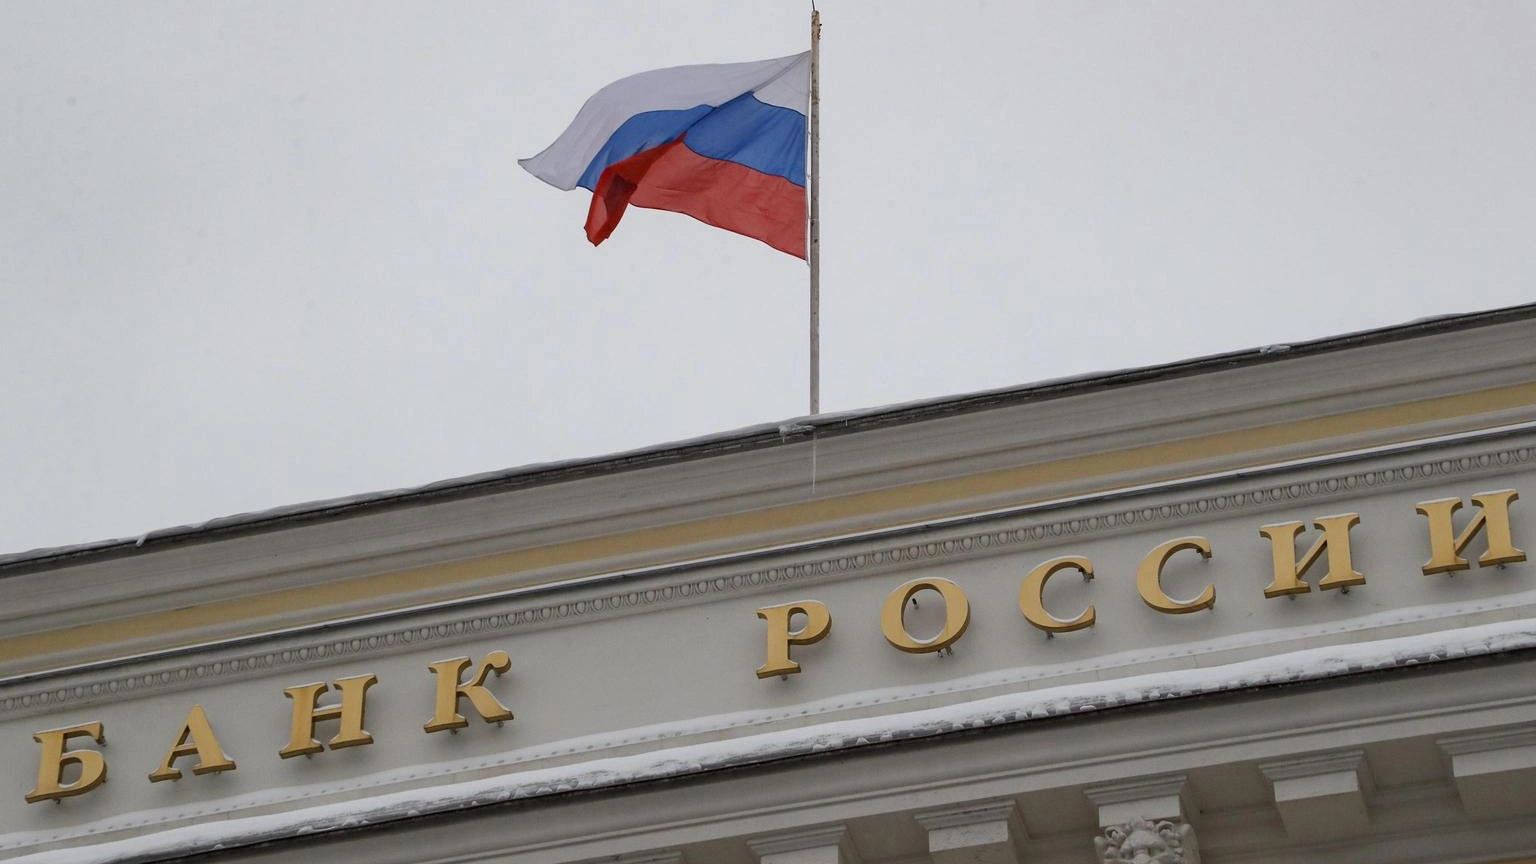 Banca centrale Russia lascia i tassi invariati al 16%